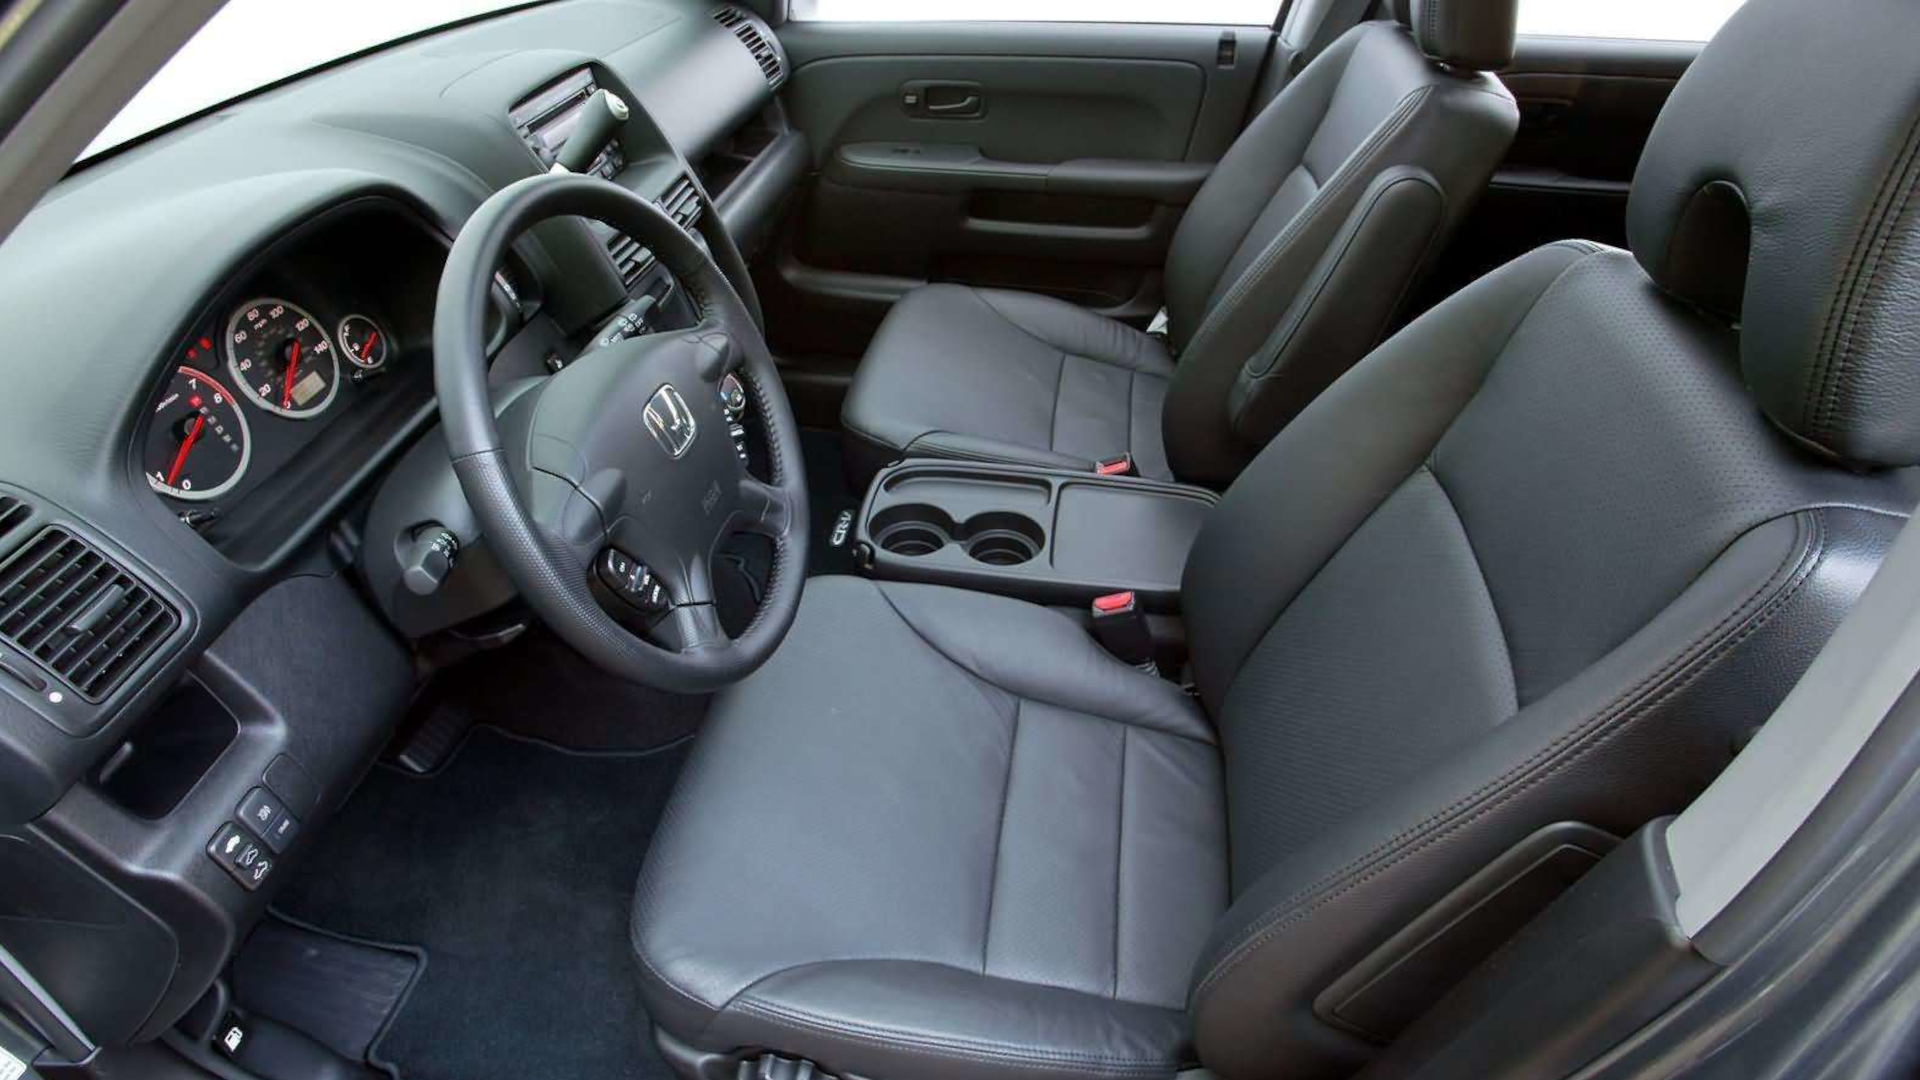 2006 Honda CR-V interior side